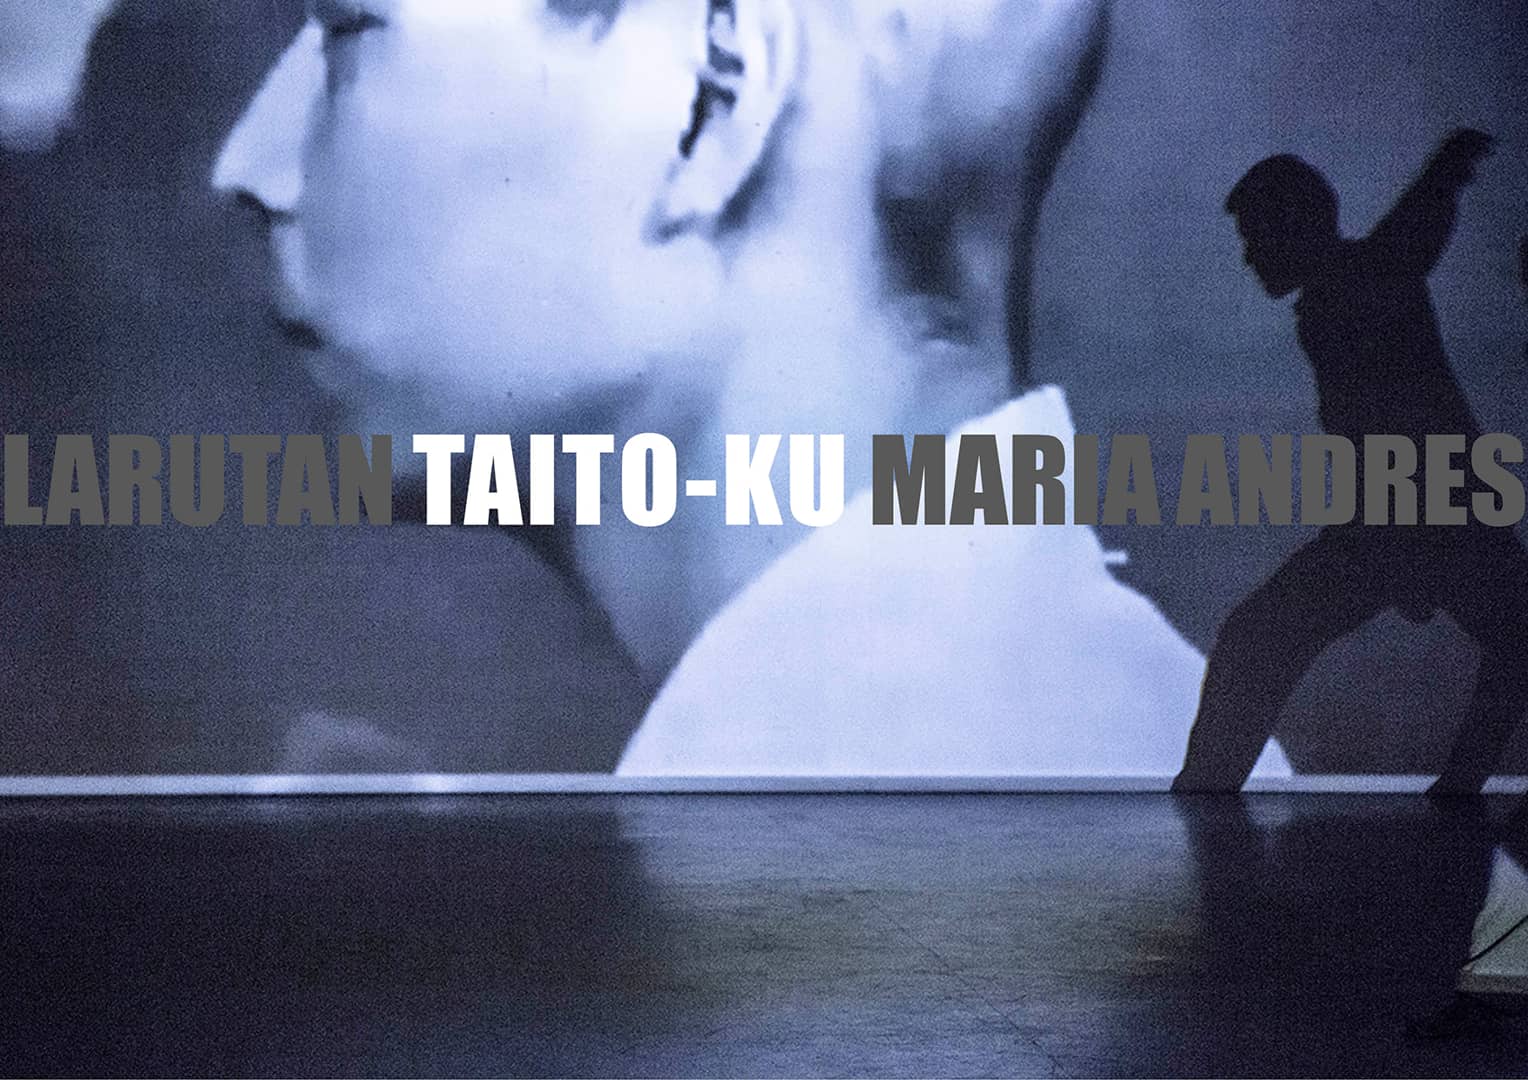 Taito-Ku